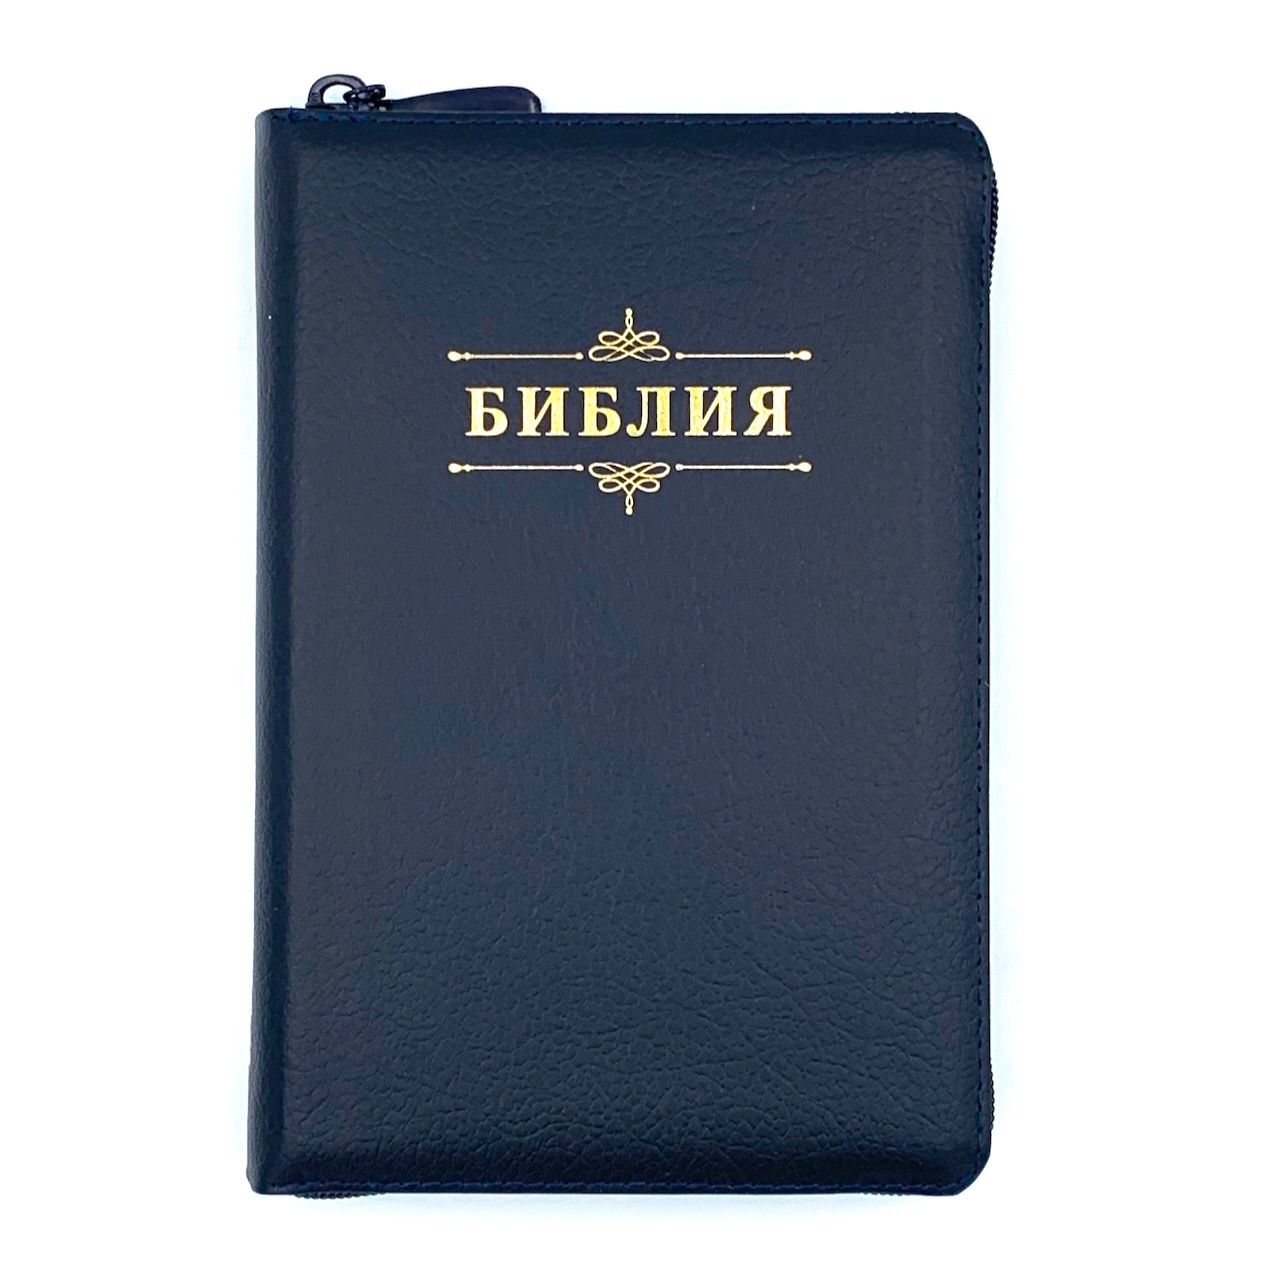 Библия 053z код B4 надпись "Библия", кожаный переплет на молнии, цвет темно-синий пятнистый, формат 140*202 мм